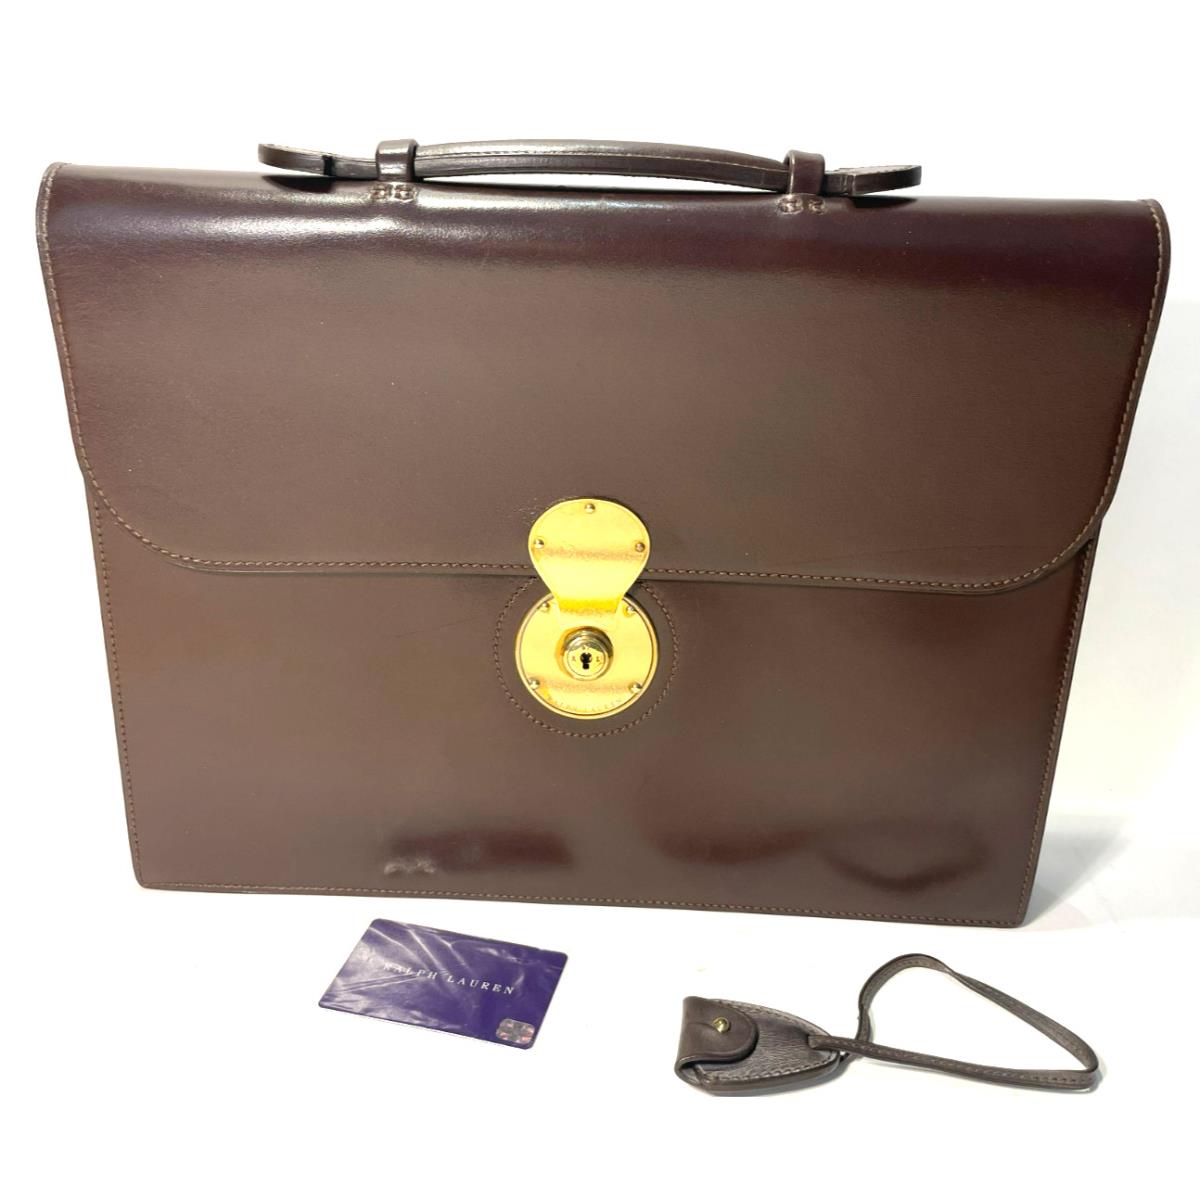 Polo Ralph Lauren - 40940BR - Soft Leather Cooper Briefcase - Dark Brown